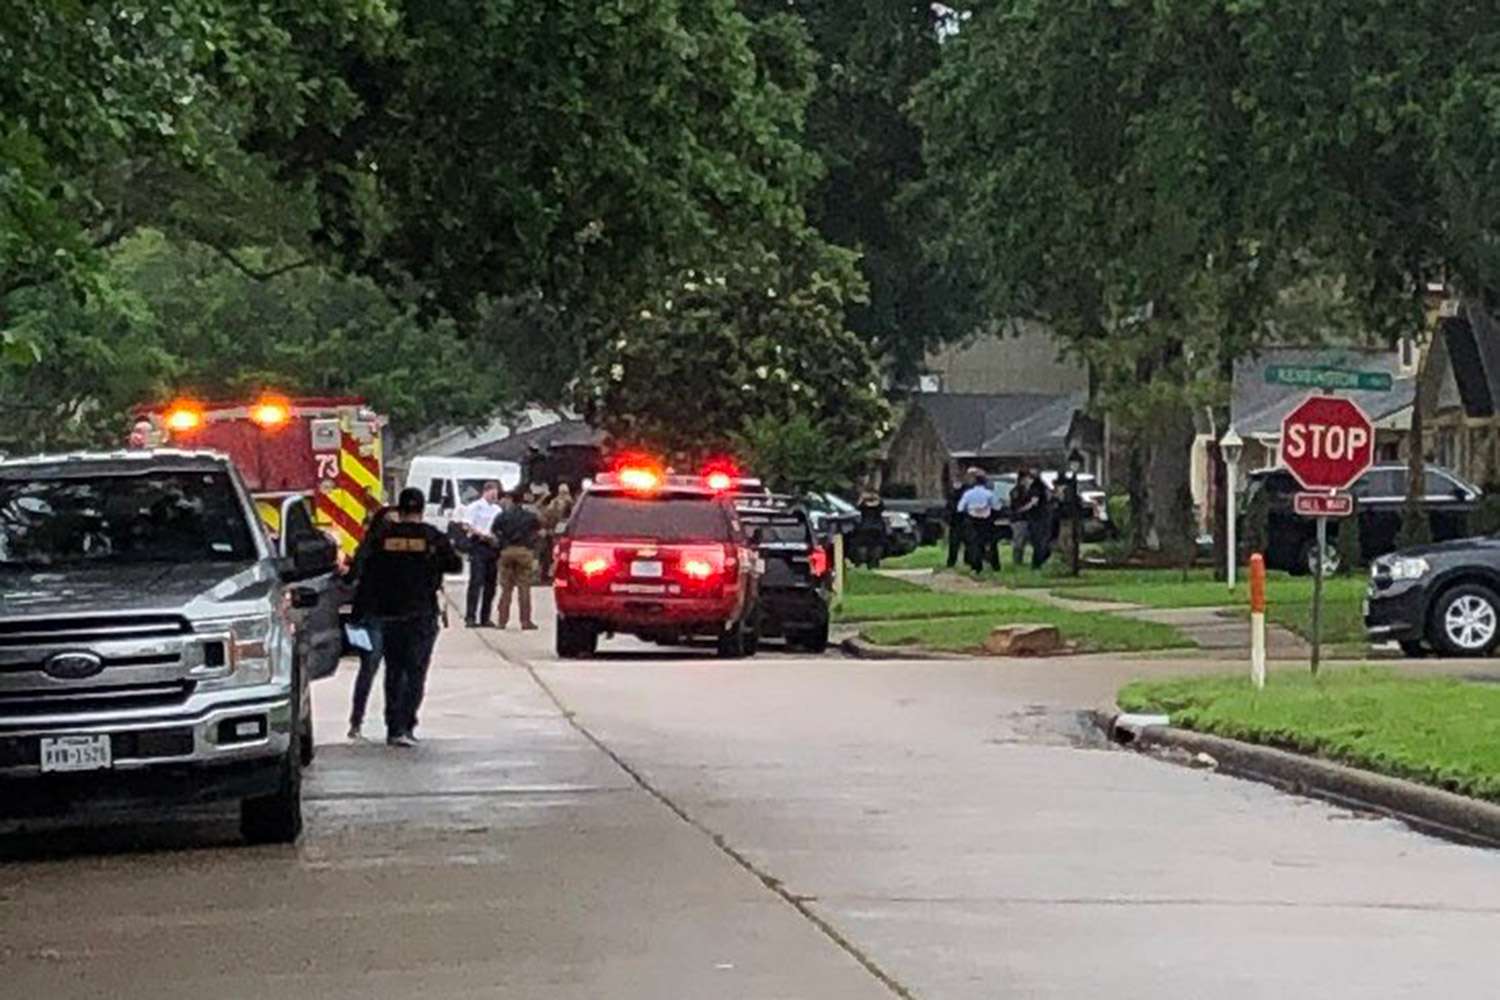 Sekitar 90 Orang Ditemukan di Rumah Houston dalam Kemungkinan Kasus Penyelundupan Manusia: Polisi